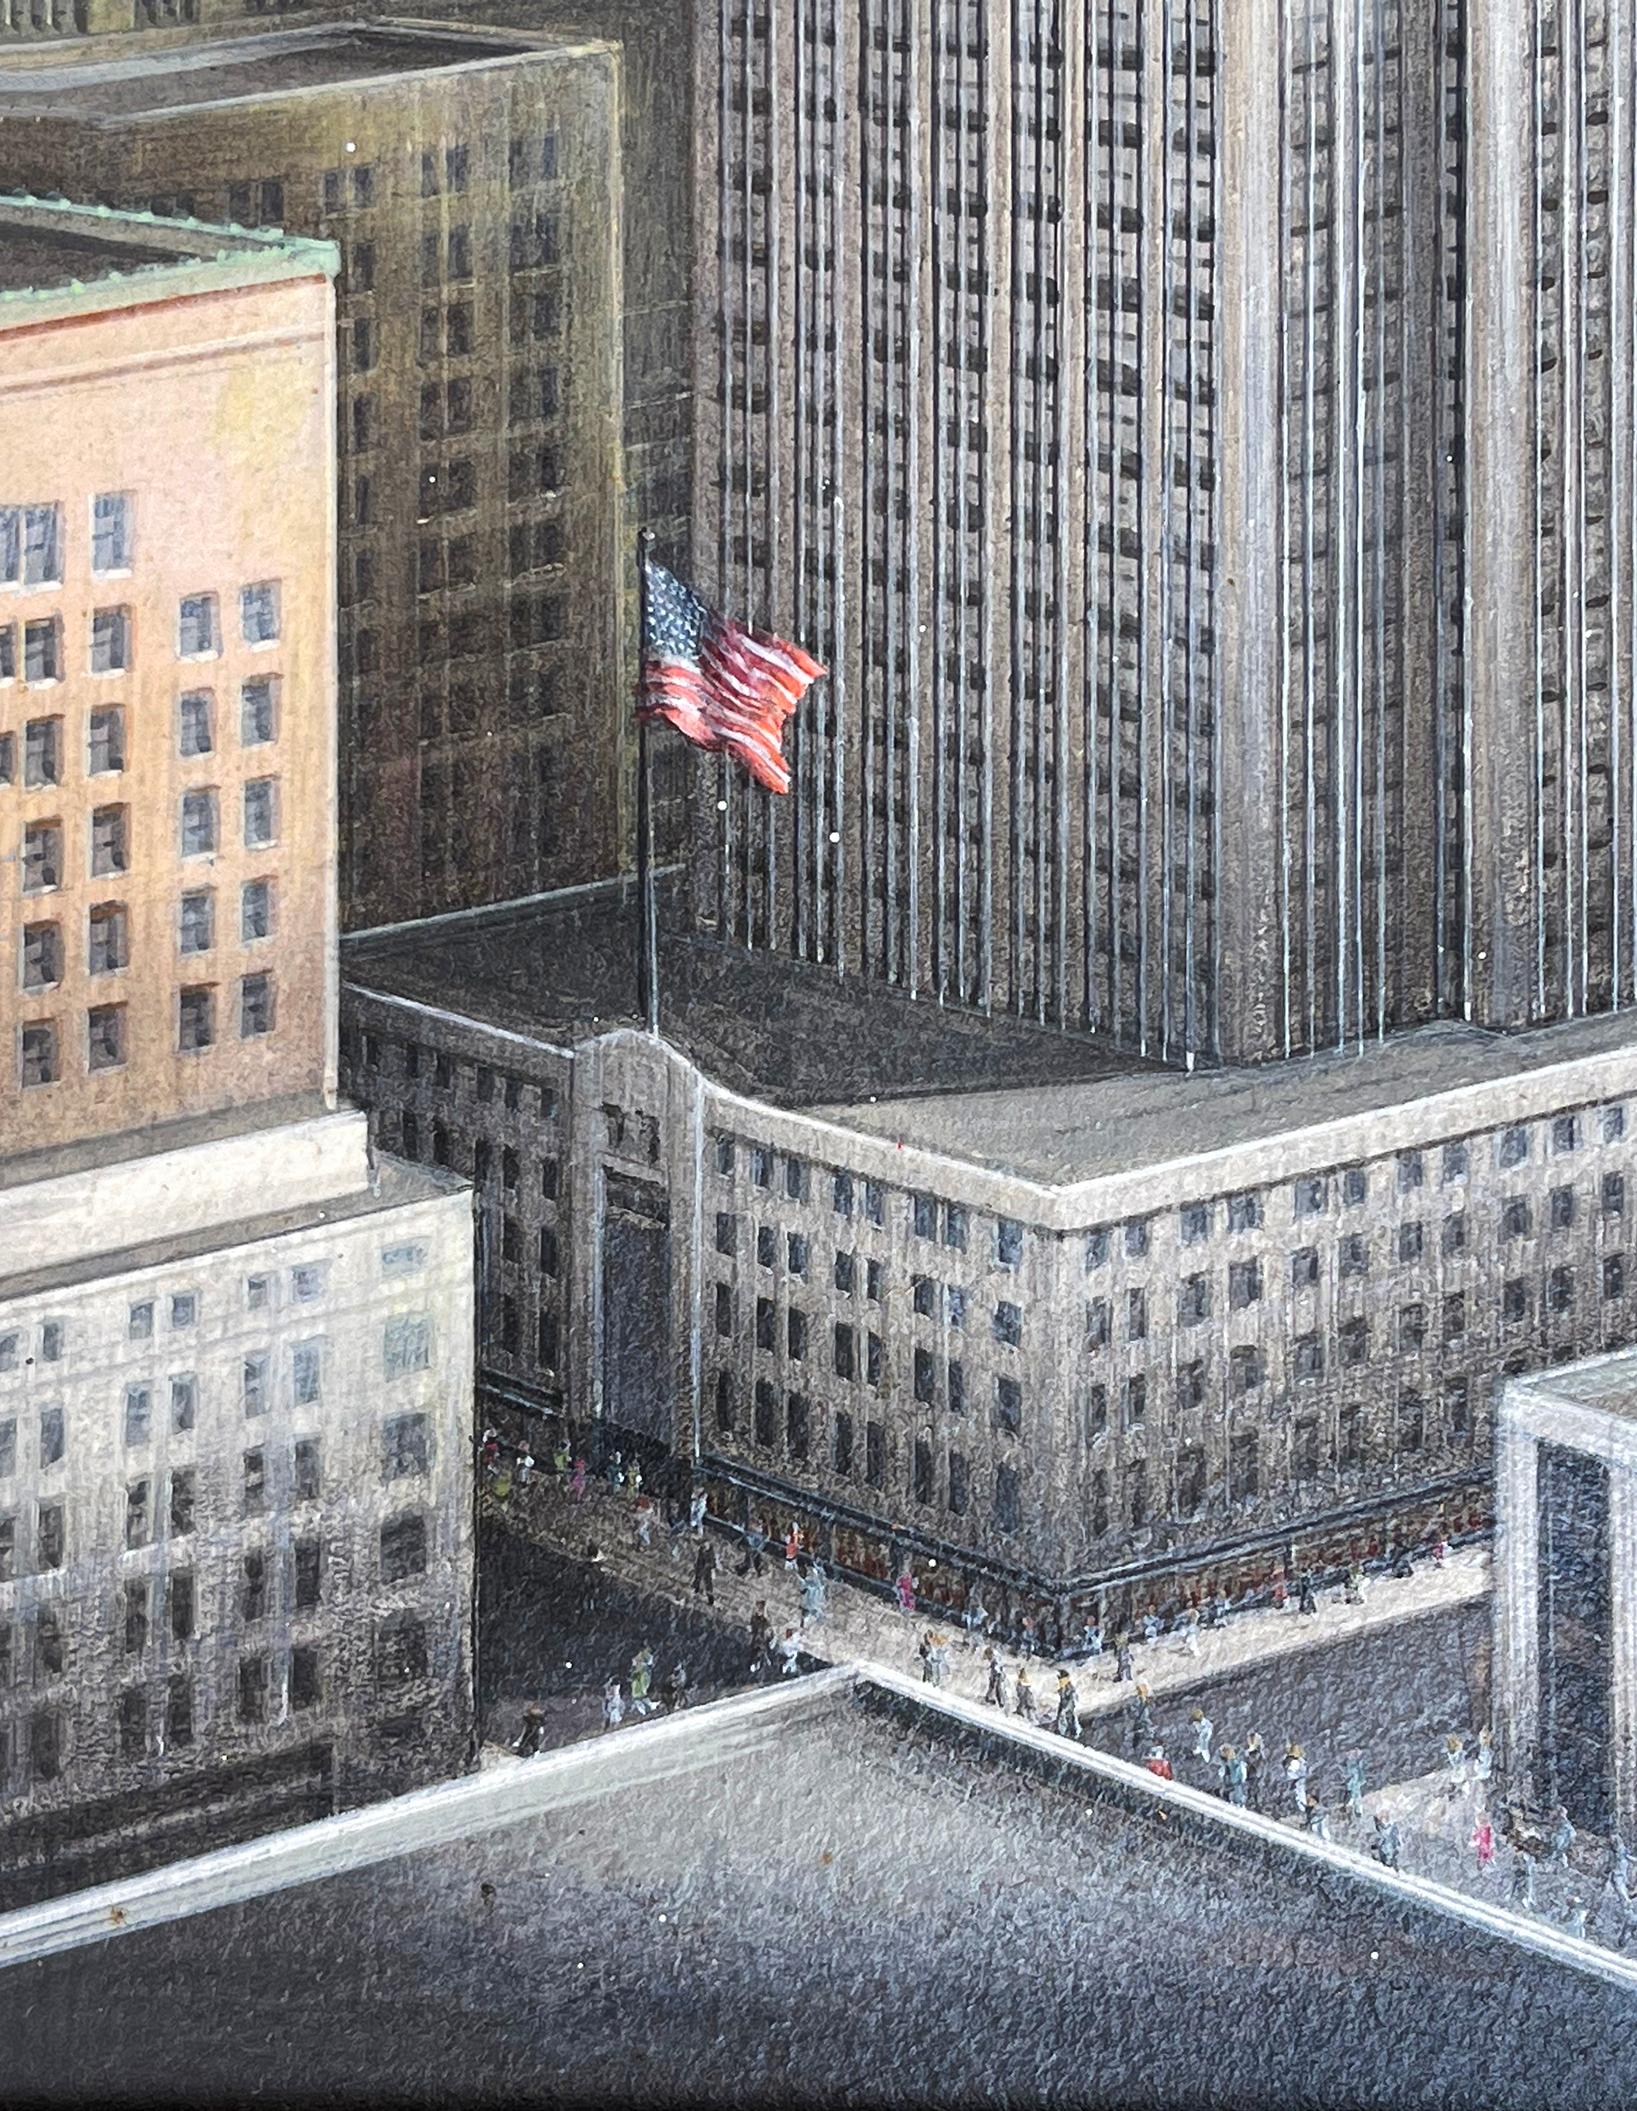 Während die meisten nicht einmal alle 102 Stockwerke des Empire State Buildings zählen können, malt die Künstlerin Alice Smith jedes einzelne Stockwerk detailgetreu und proportional.   Das Gemälde wurde höchstwahrscheinlich im Auftrag angefertigt. 